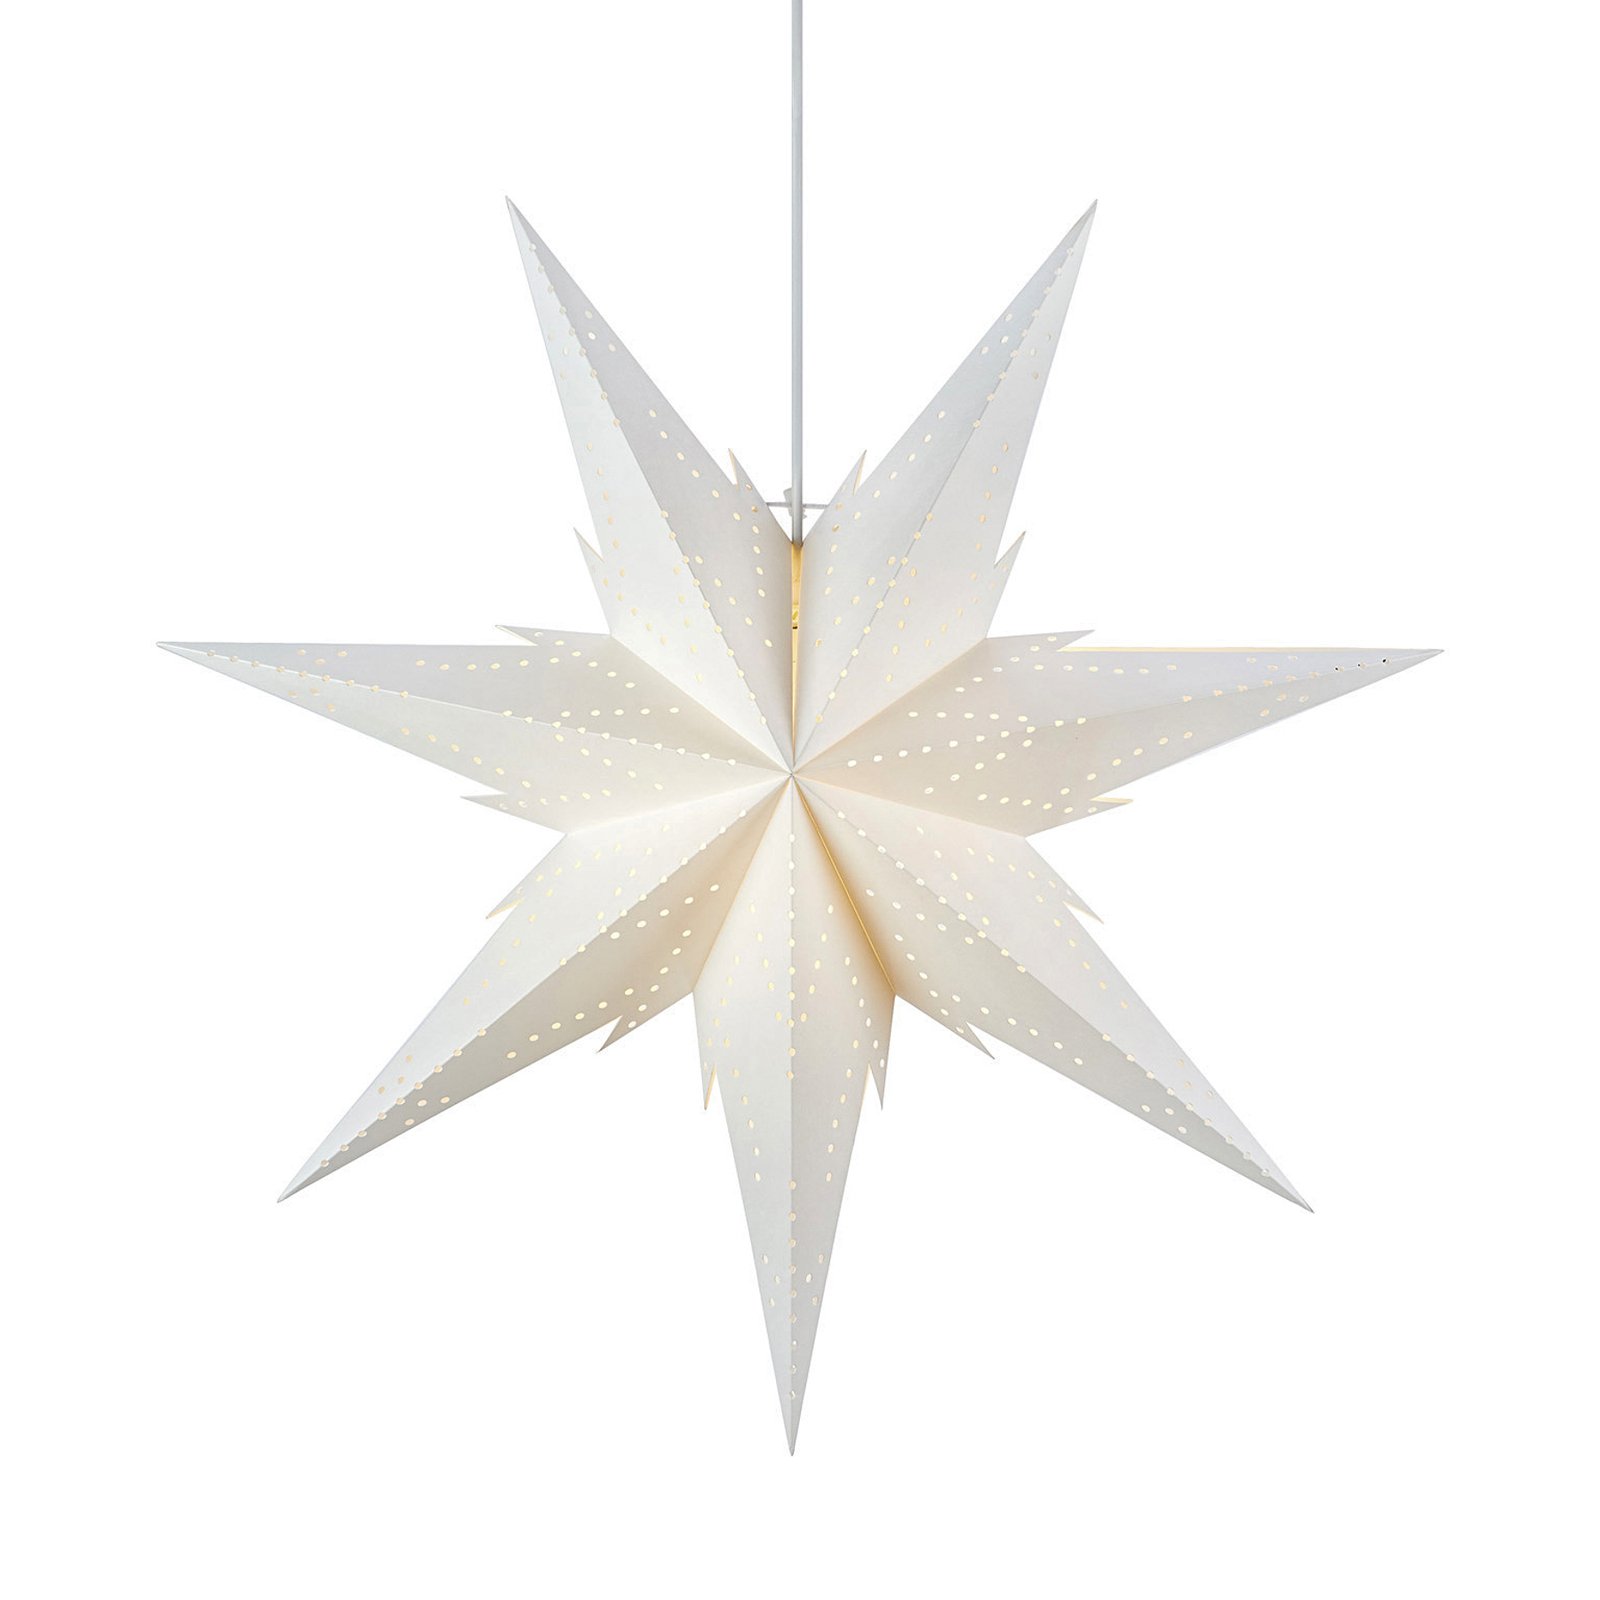 Hengende adventsstjerne Daria, hvit Ø 60 cm